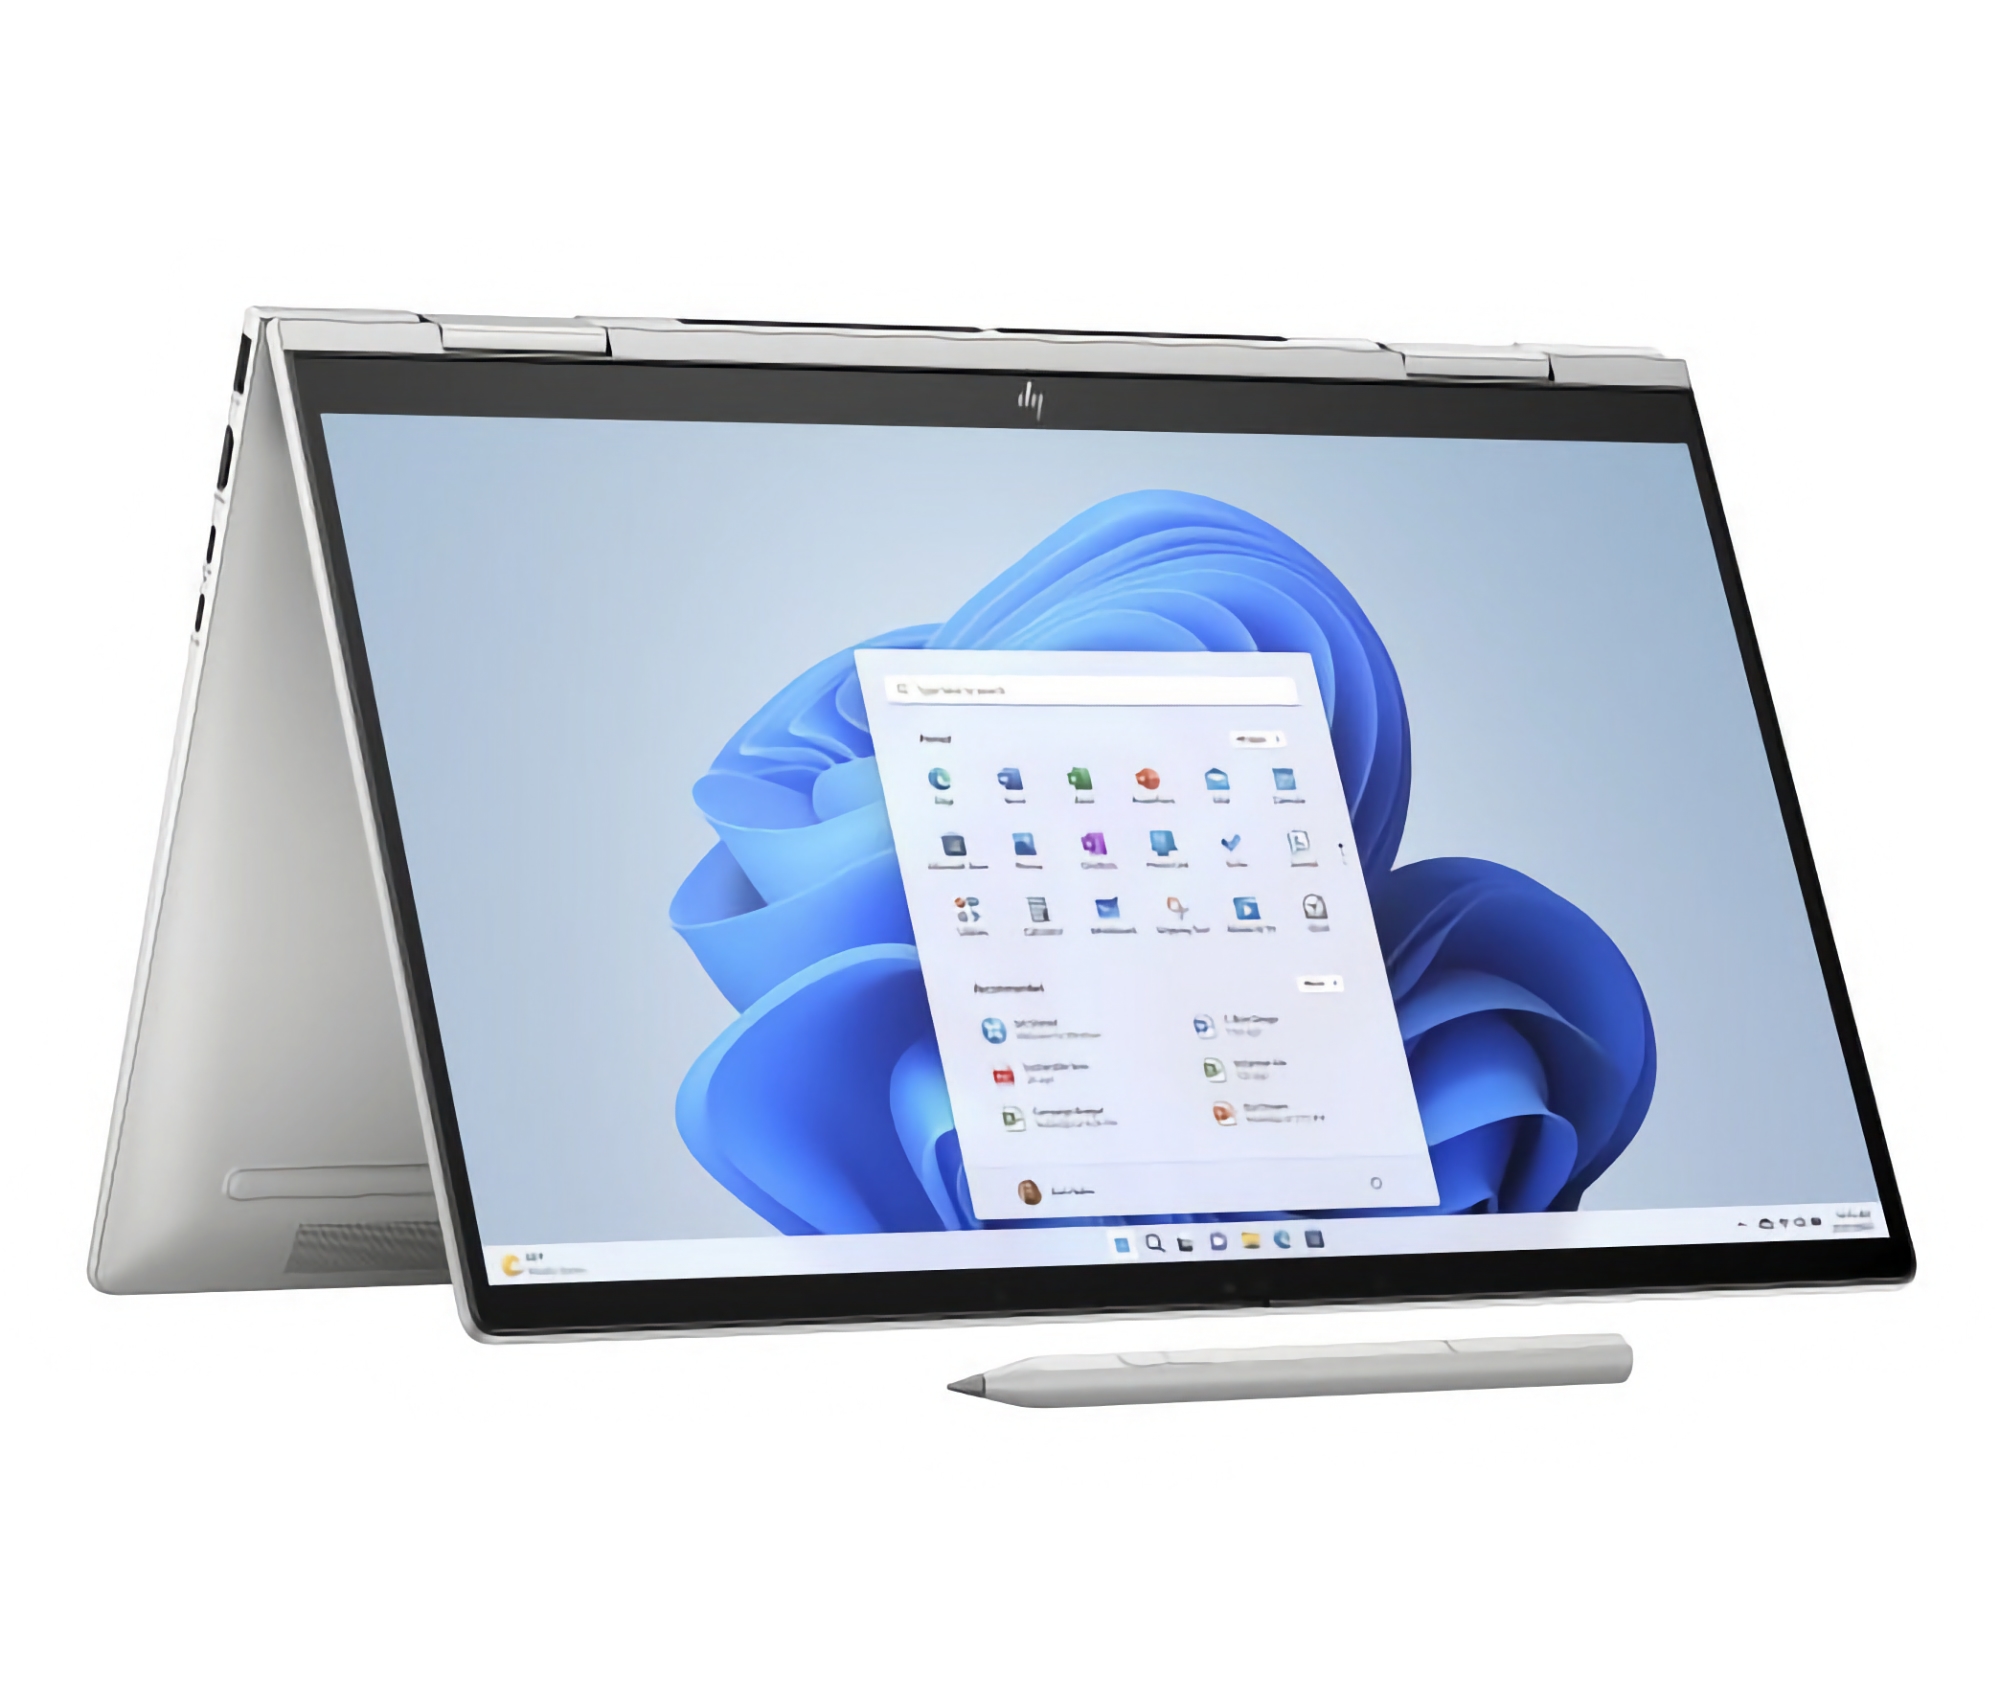 HP stellt das Envy x360 15 vor: die weltweit erste Notebook-Serie mit IMAX Enhanced-Zertifizierung